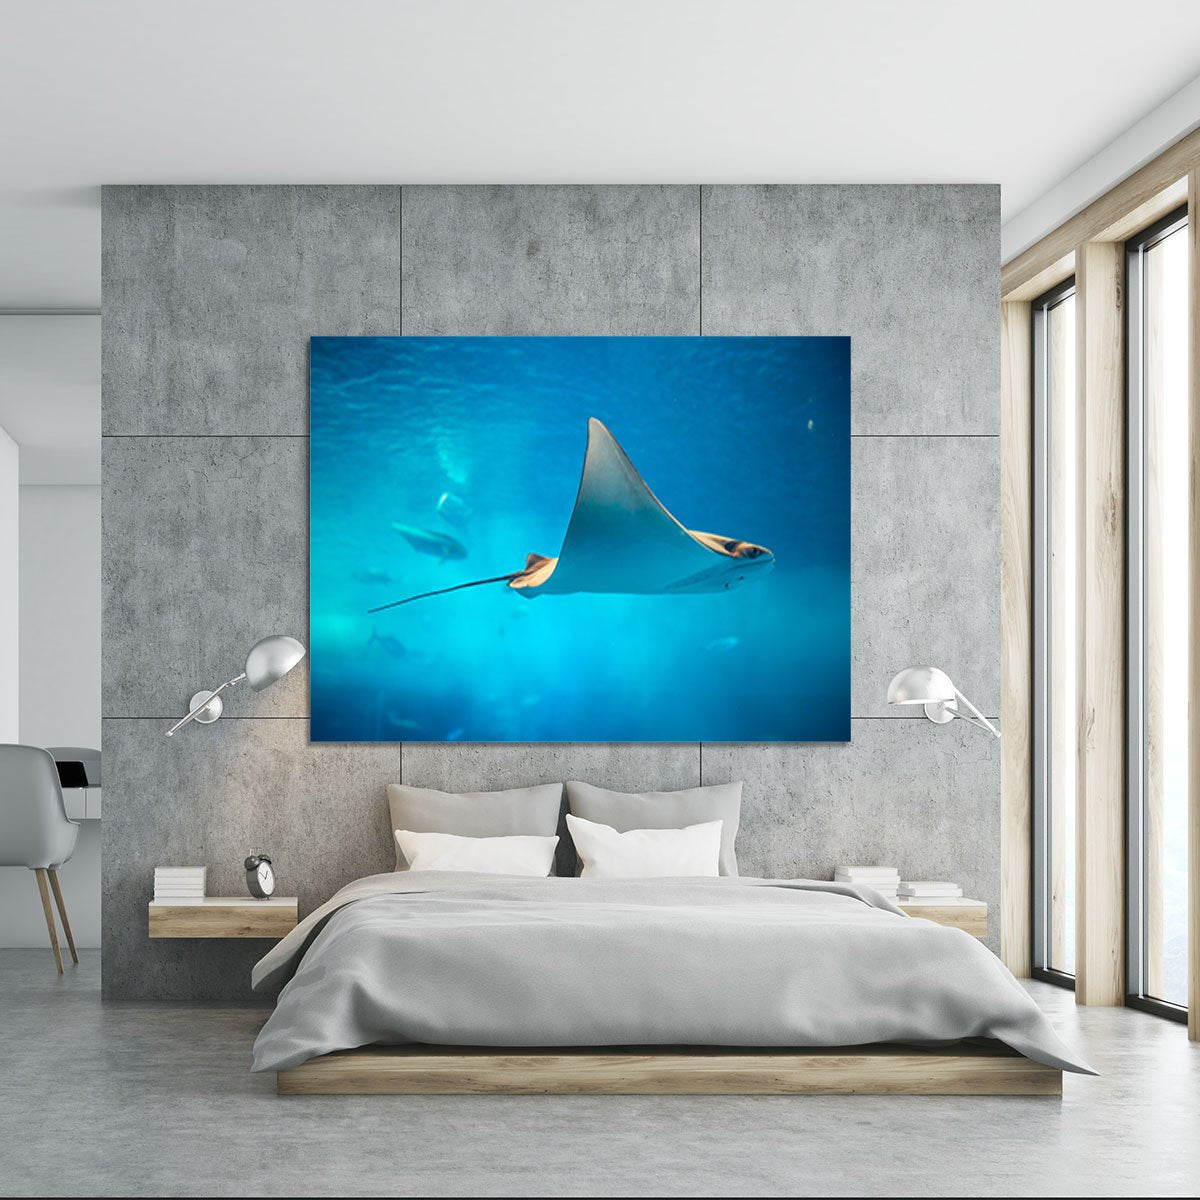 Stingray in the aquarium Canvas Print or Poster